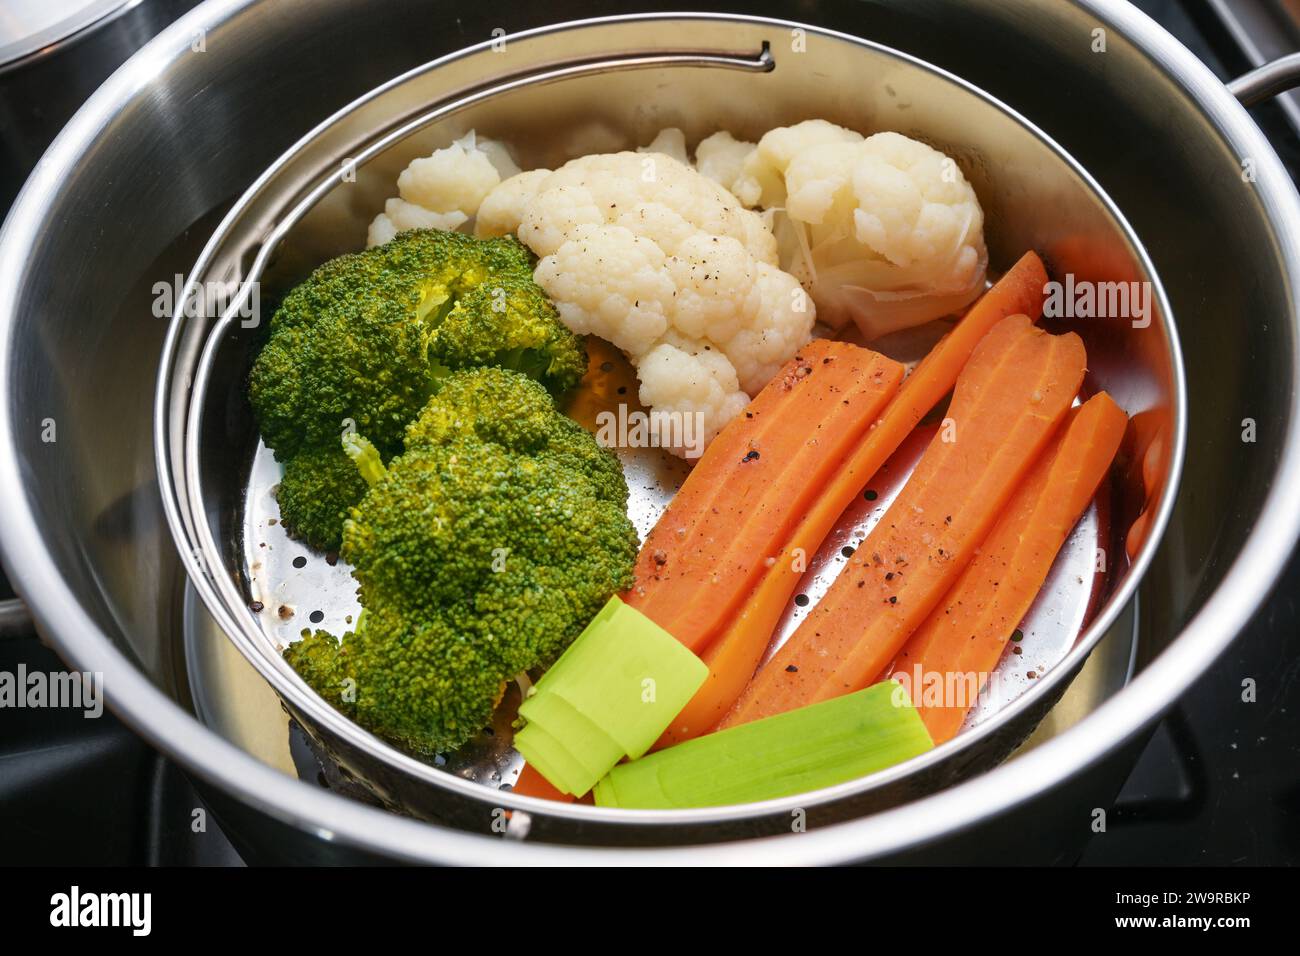 Mezcla de verduras, zanahorias, brócoli y coliflor en una cesta de vapor de alimentos en una olla de acero inoxidable, método de cocción saludable que preserva los minerales, vi Foto de stock